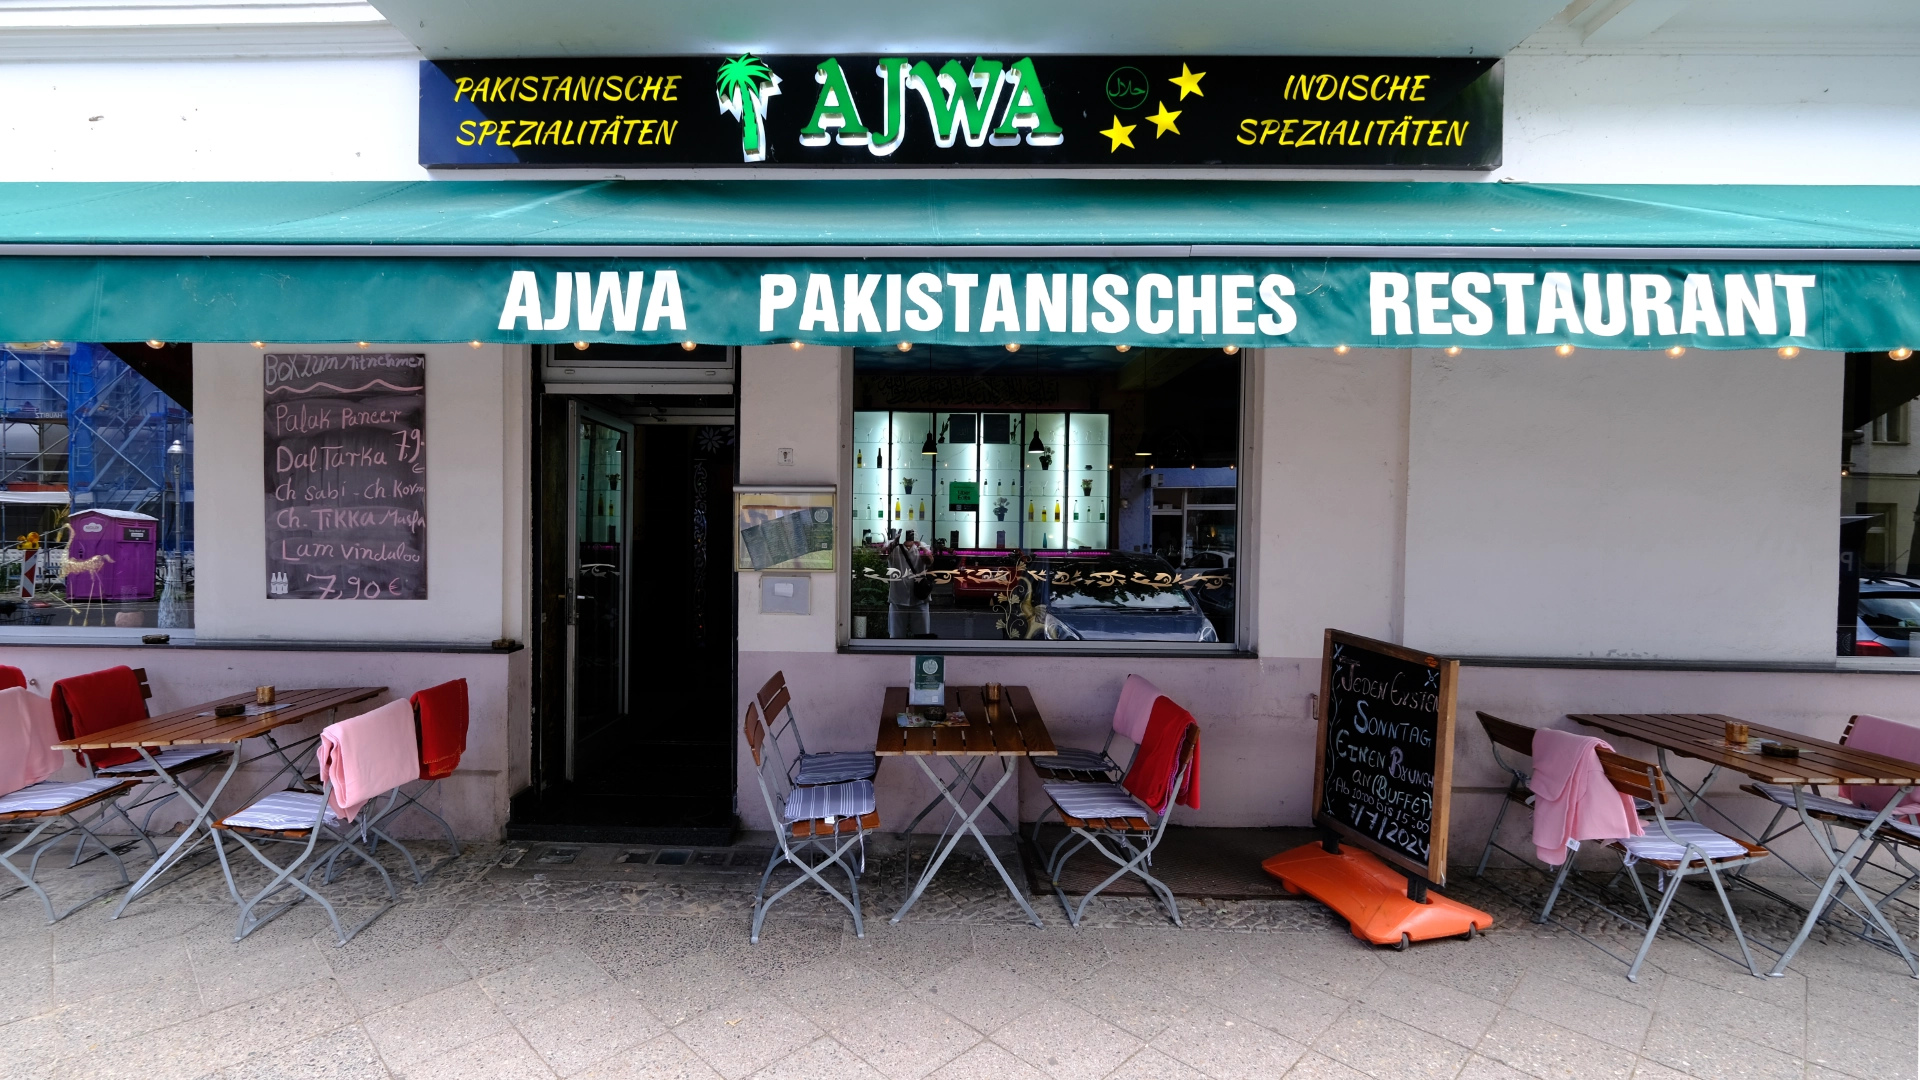 AJWA-RESTAURANT Pakistanisch Indische Spezialitäten